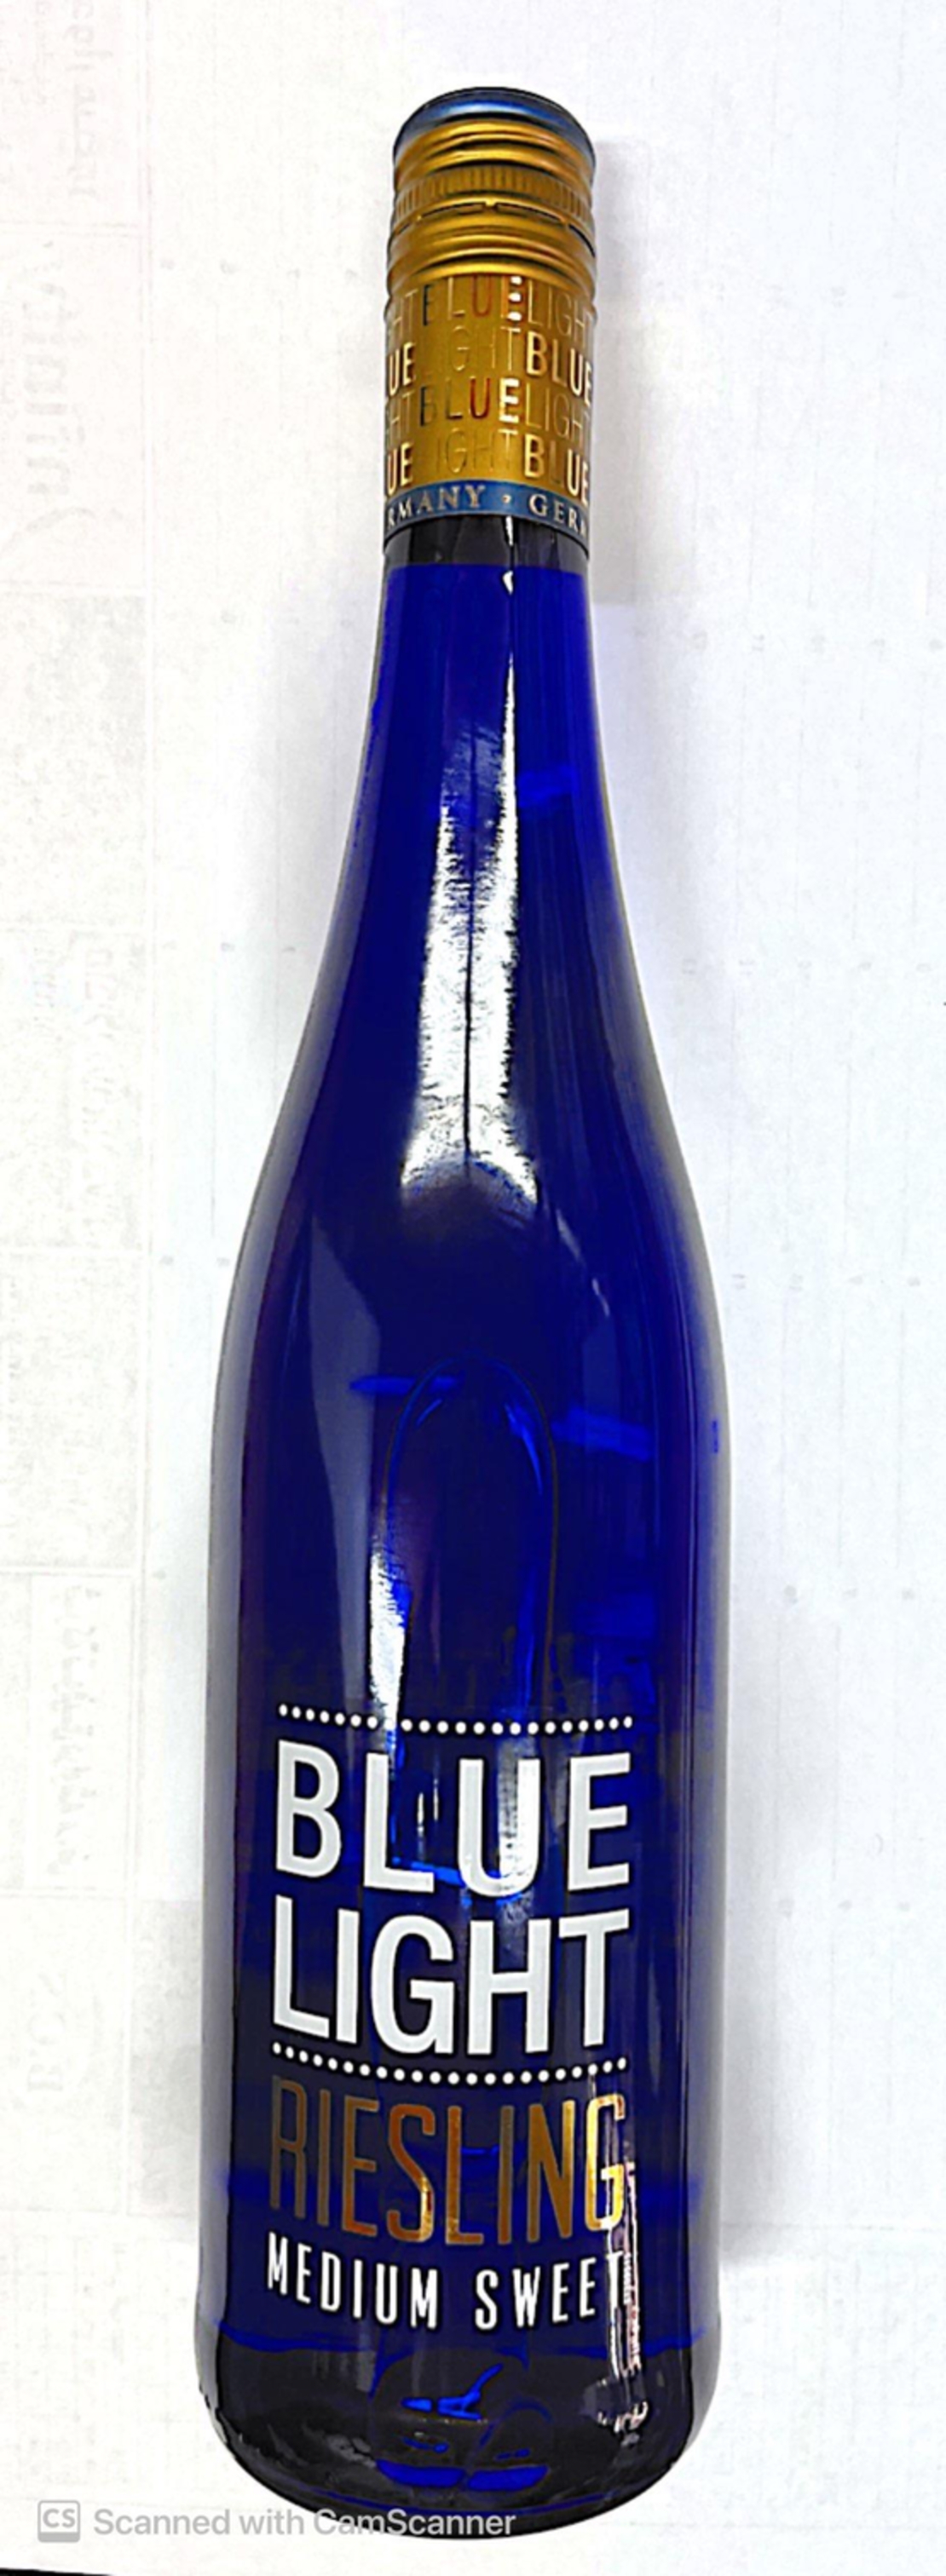 יין בלו לייט לבן חצימתוק8.5% - ריזלינג1/6 BLUE LIGHT